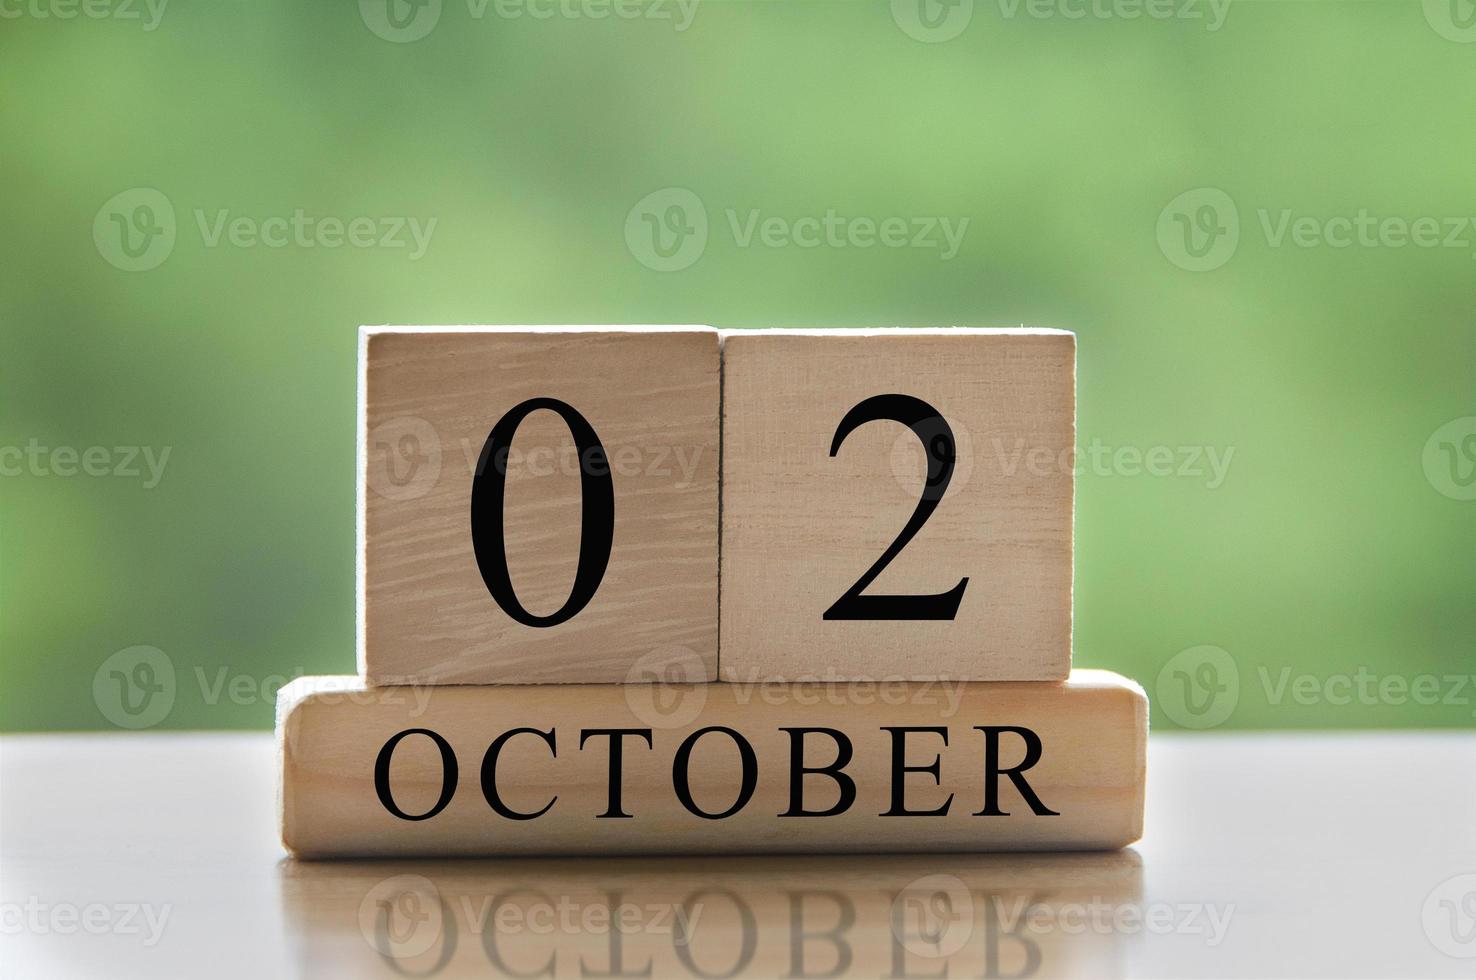 2 oktober kalenderdatumtekst op houten blokken met kopieerruimte voor ideeën. kopieer ruimte en kalenderconcept foto